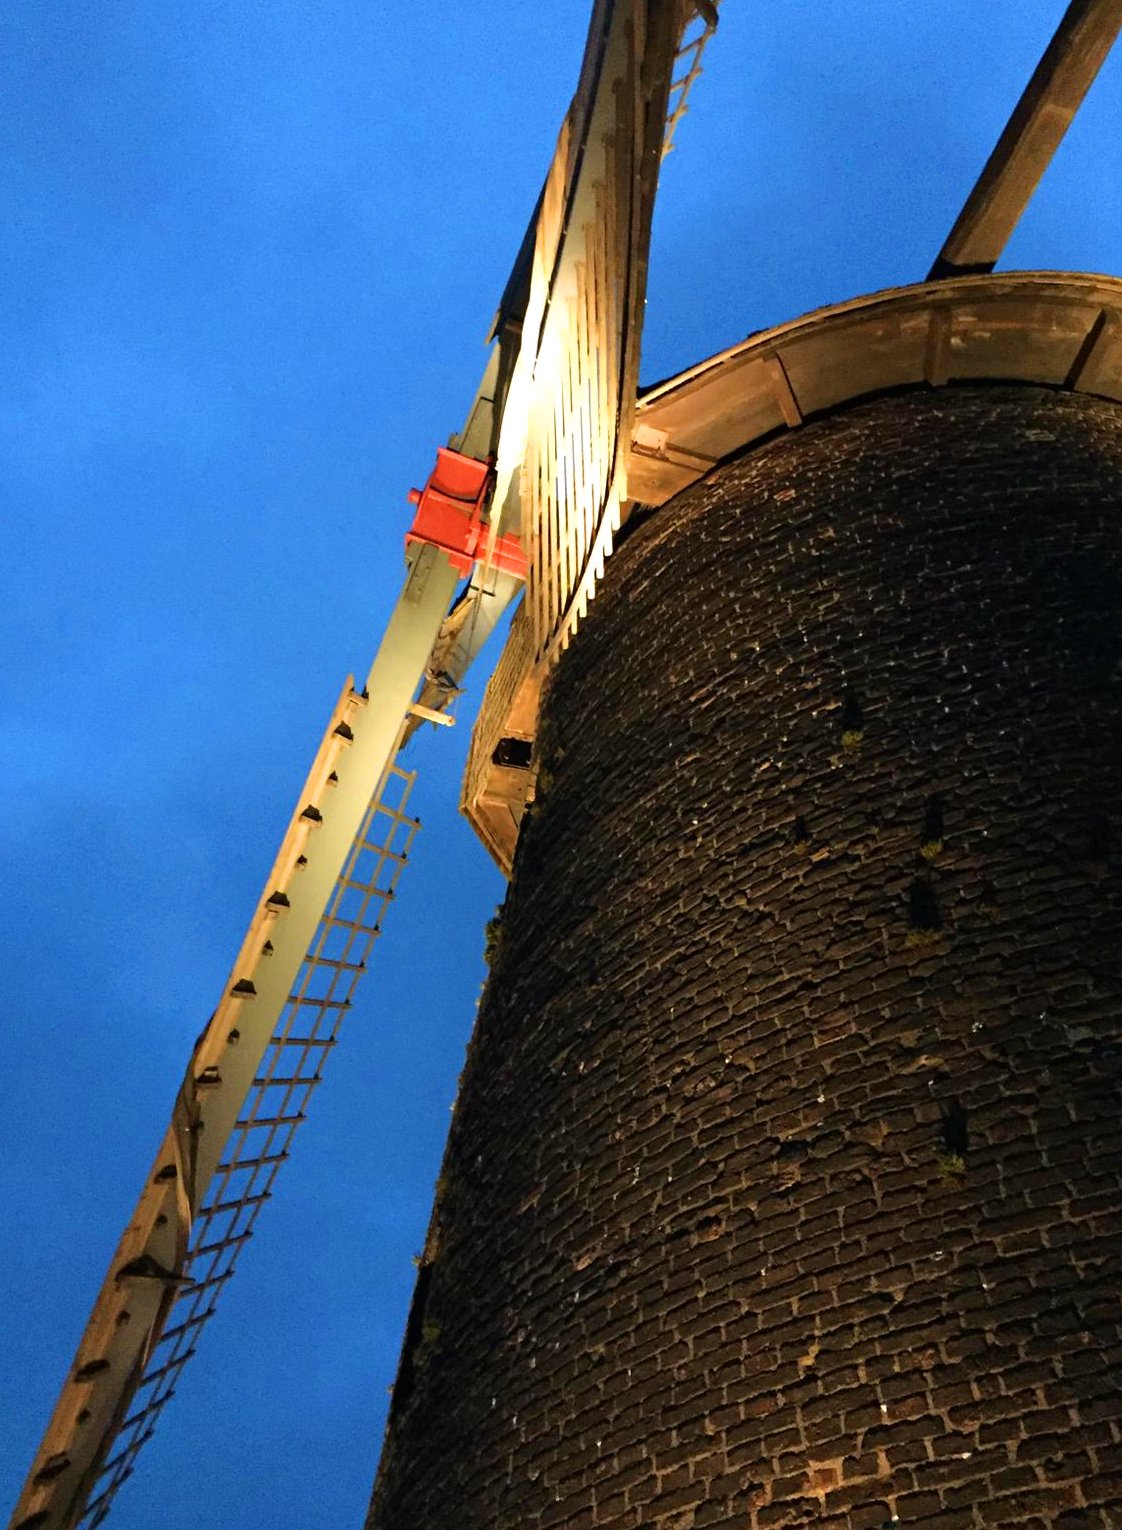 die Windmühle mit neuem Strahlerlicht am Sommerabend